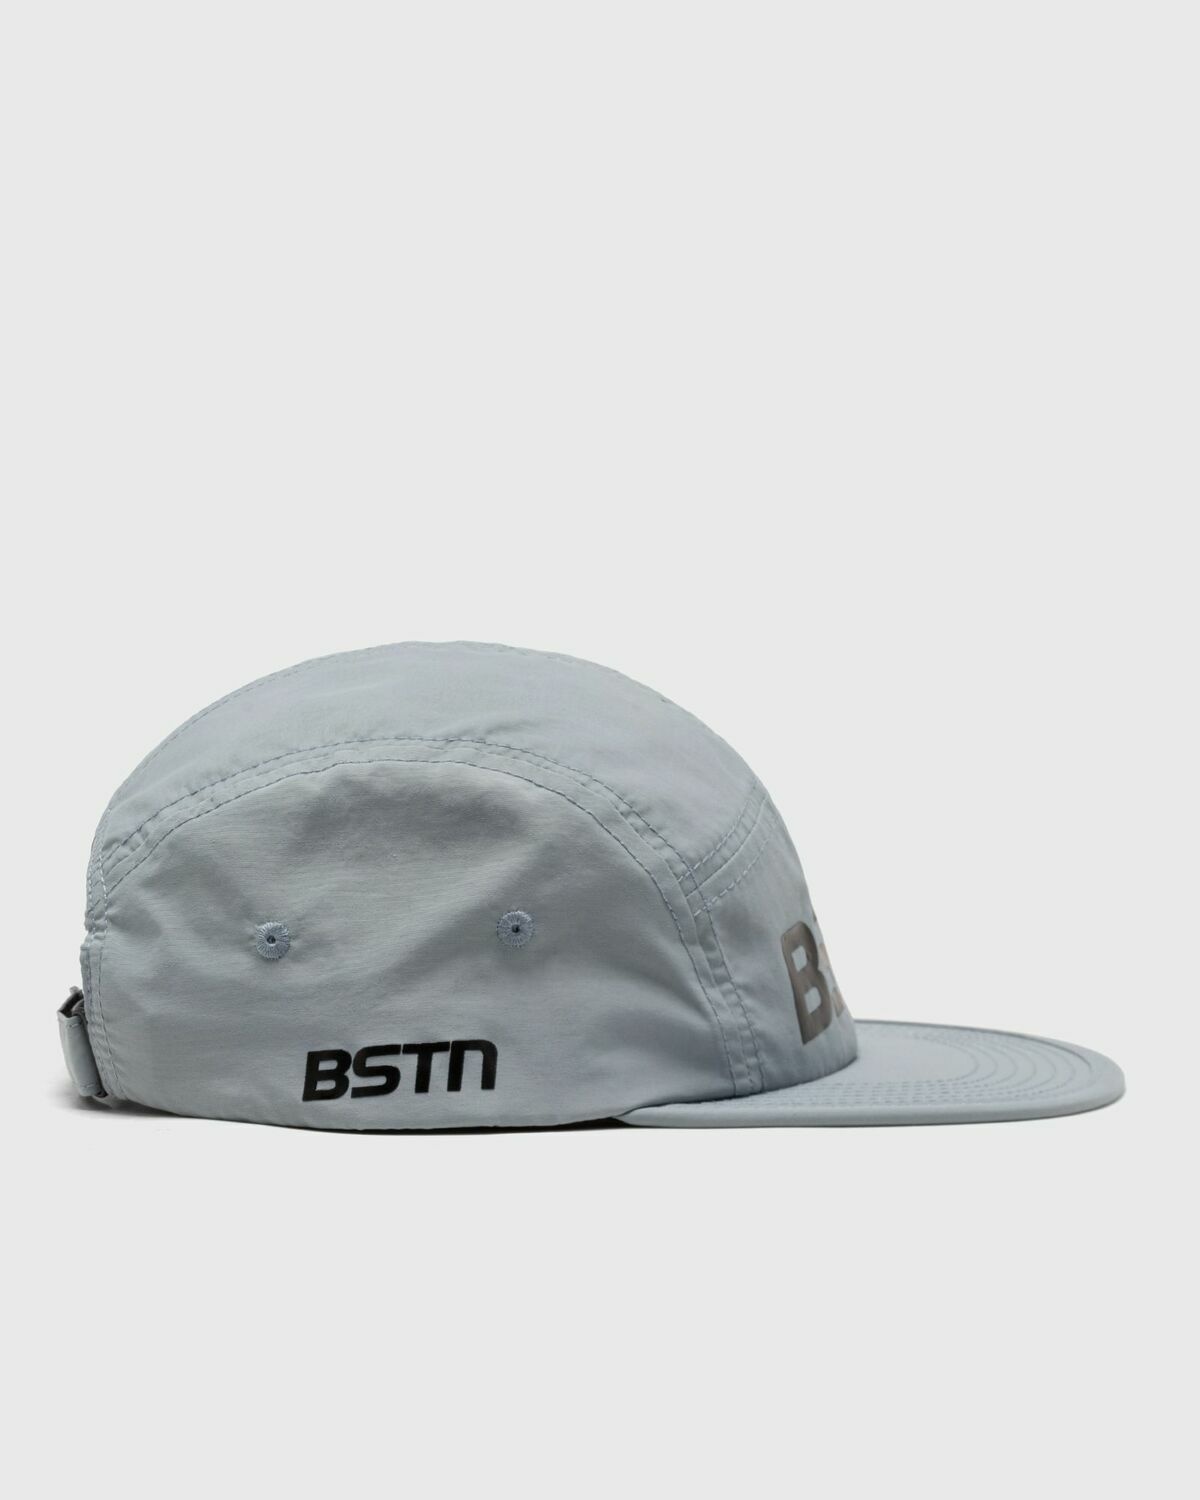 Bstn Brand Lightweight Cap Grey - Mens - Caps